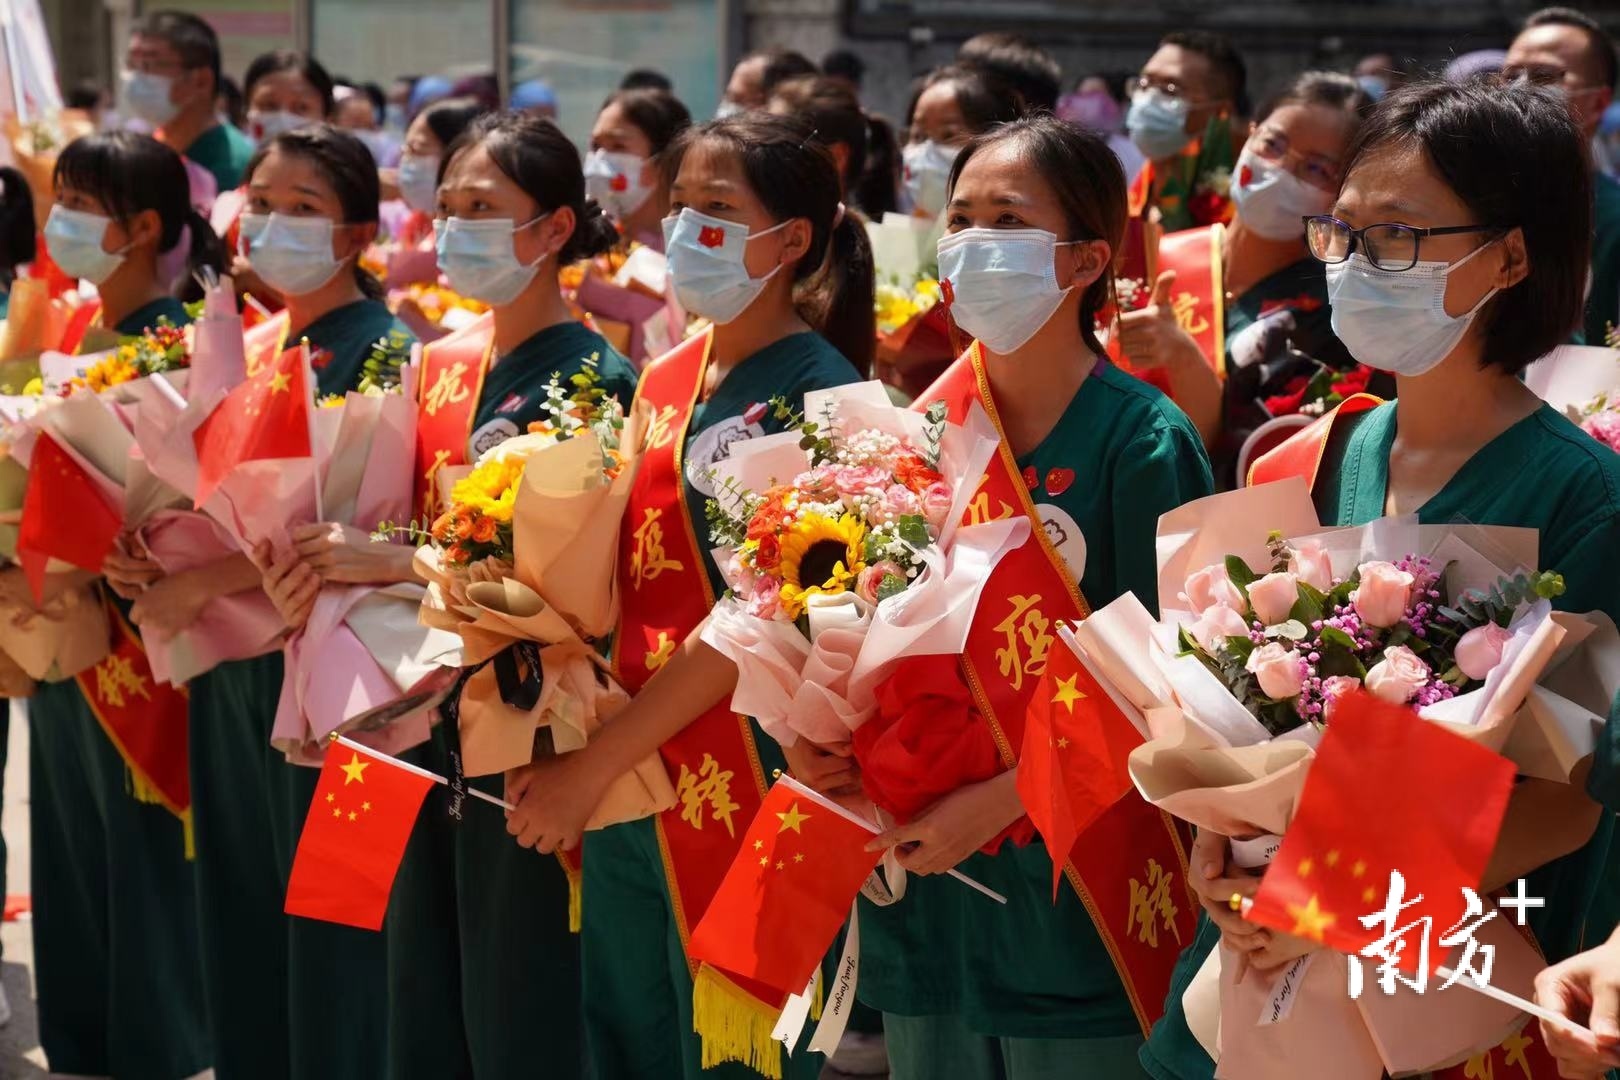 广州市红十字会医院举办欢迎仪式迎接医疗队员归来